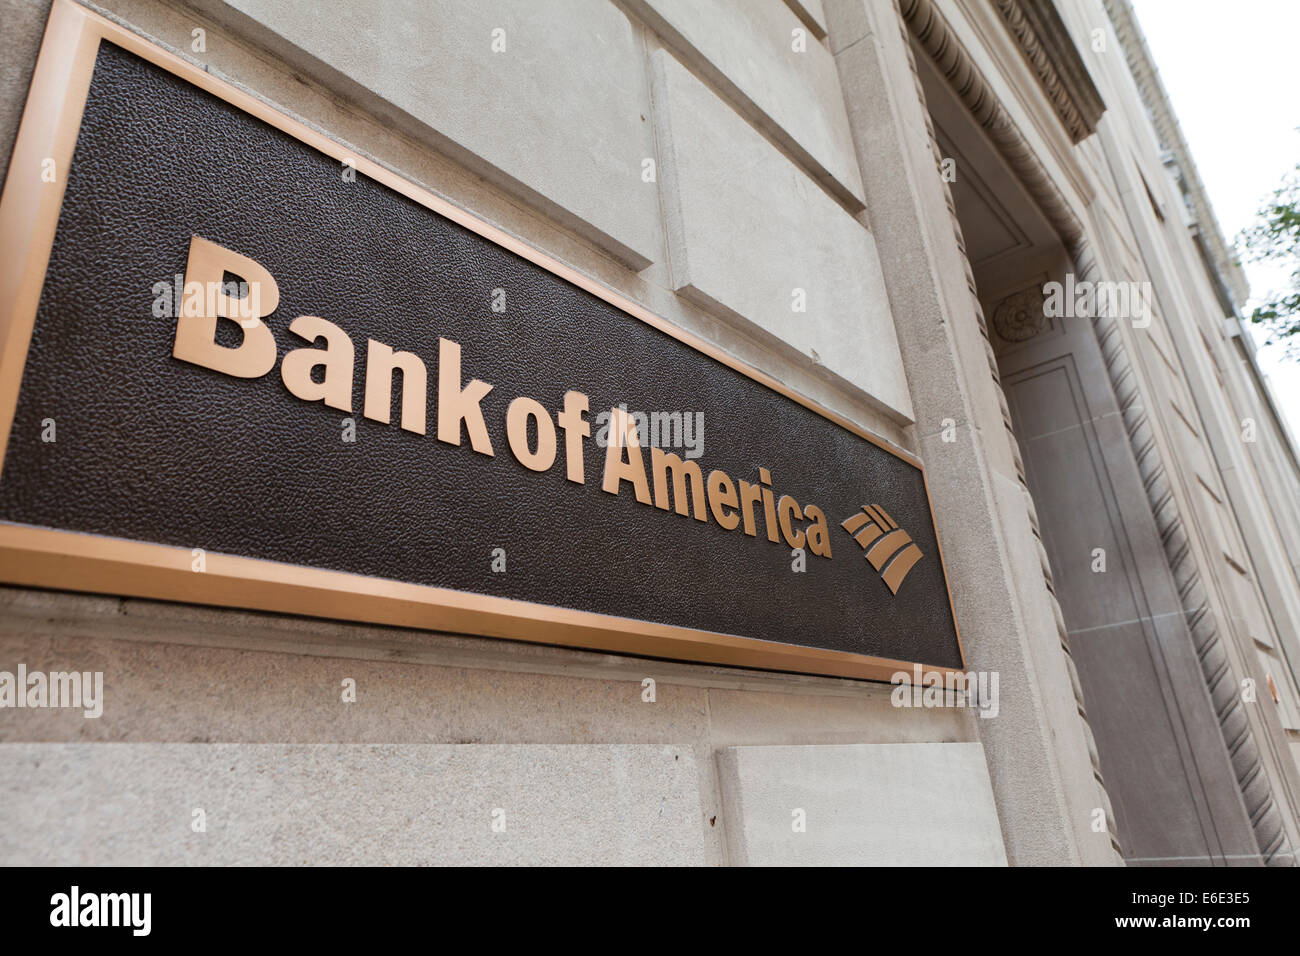 Bank of America sign - Washington, DC USA Stock Photo